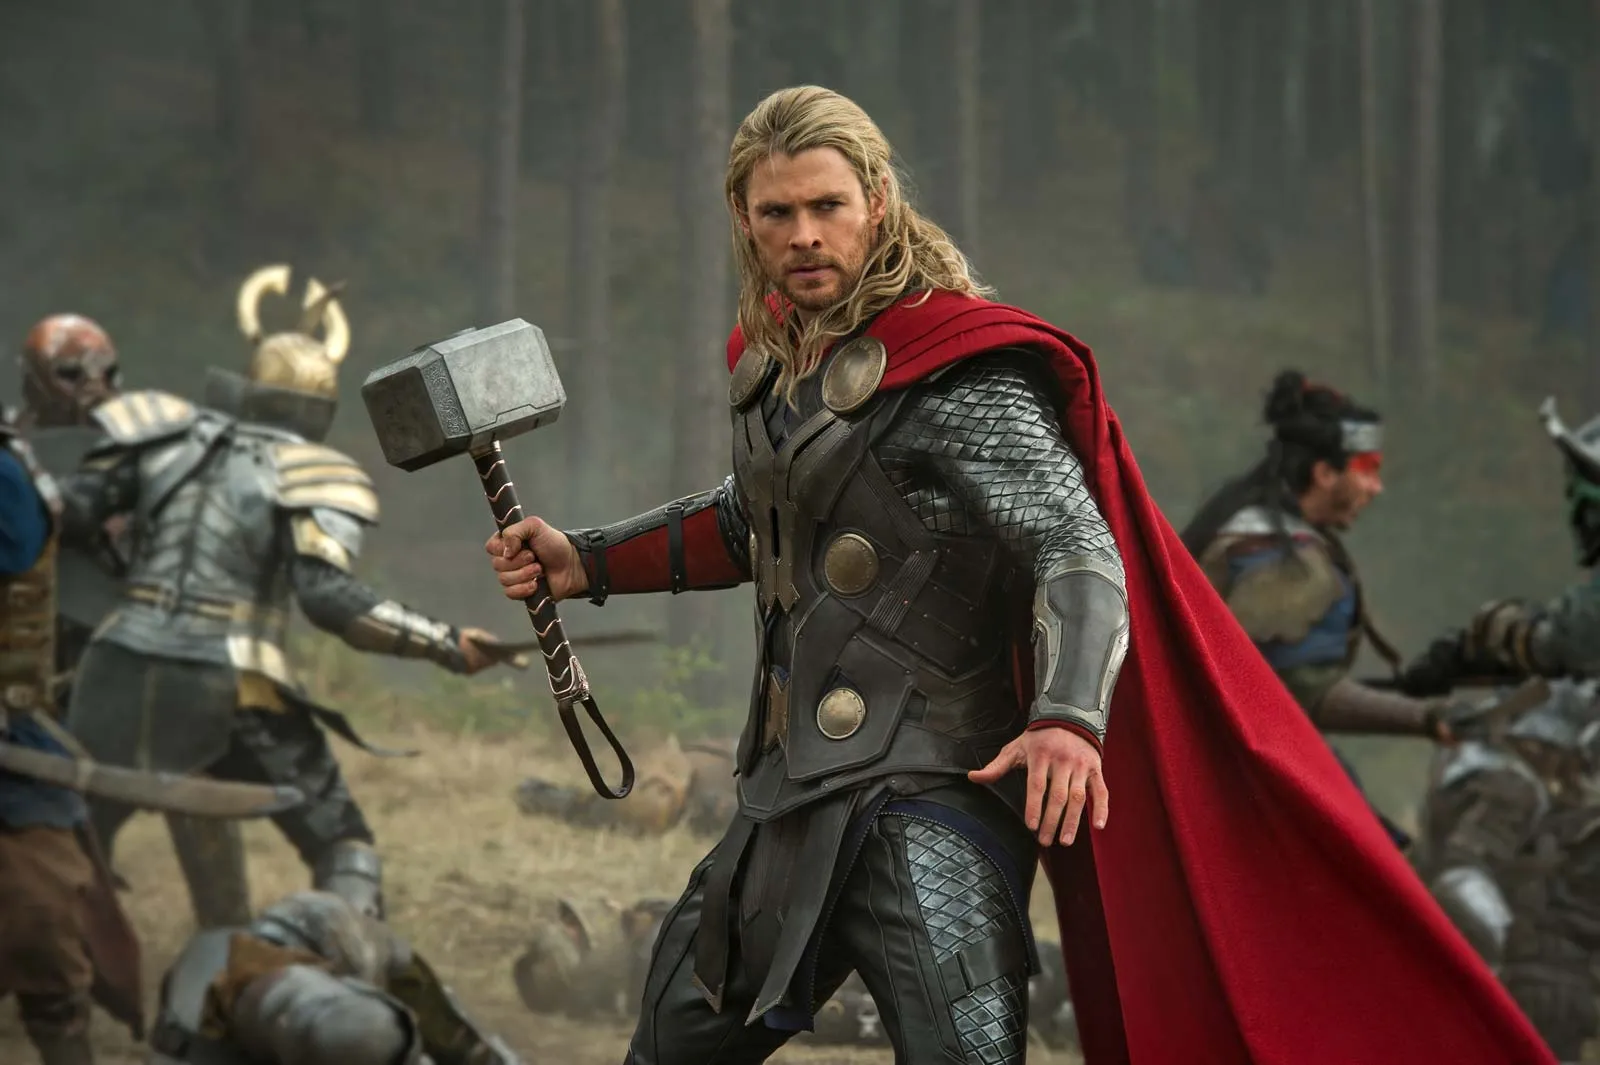 Trở lại với vai Thor Odinson, anh sẽ tiếp tục hóa thân vào nhân vật siêu anh hùng mạnh mẽ này.